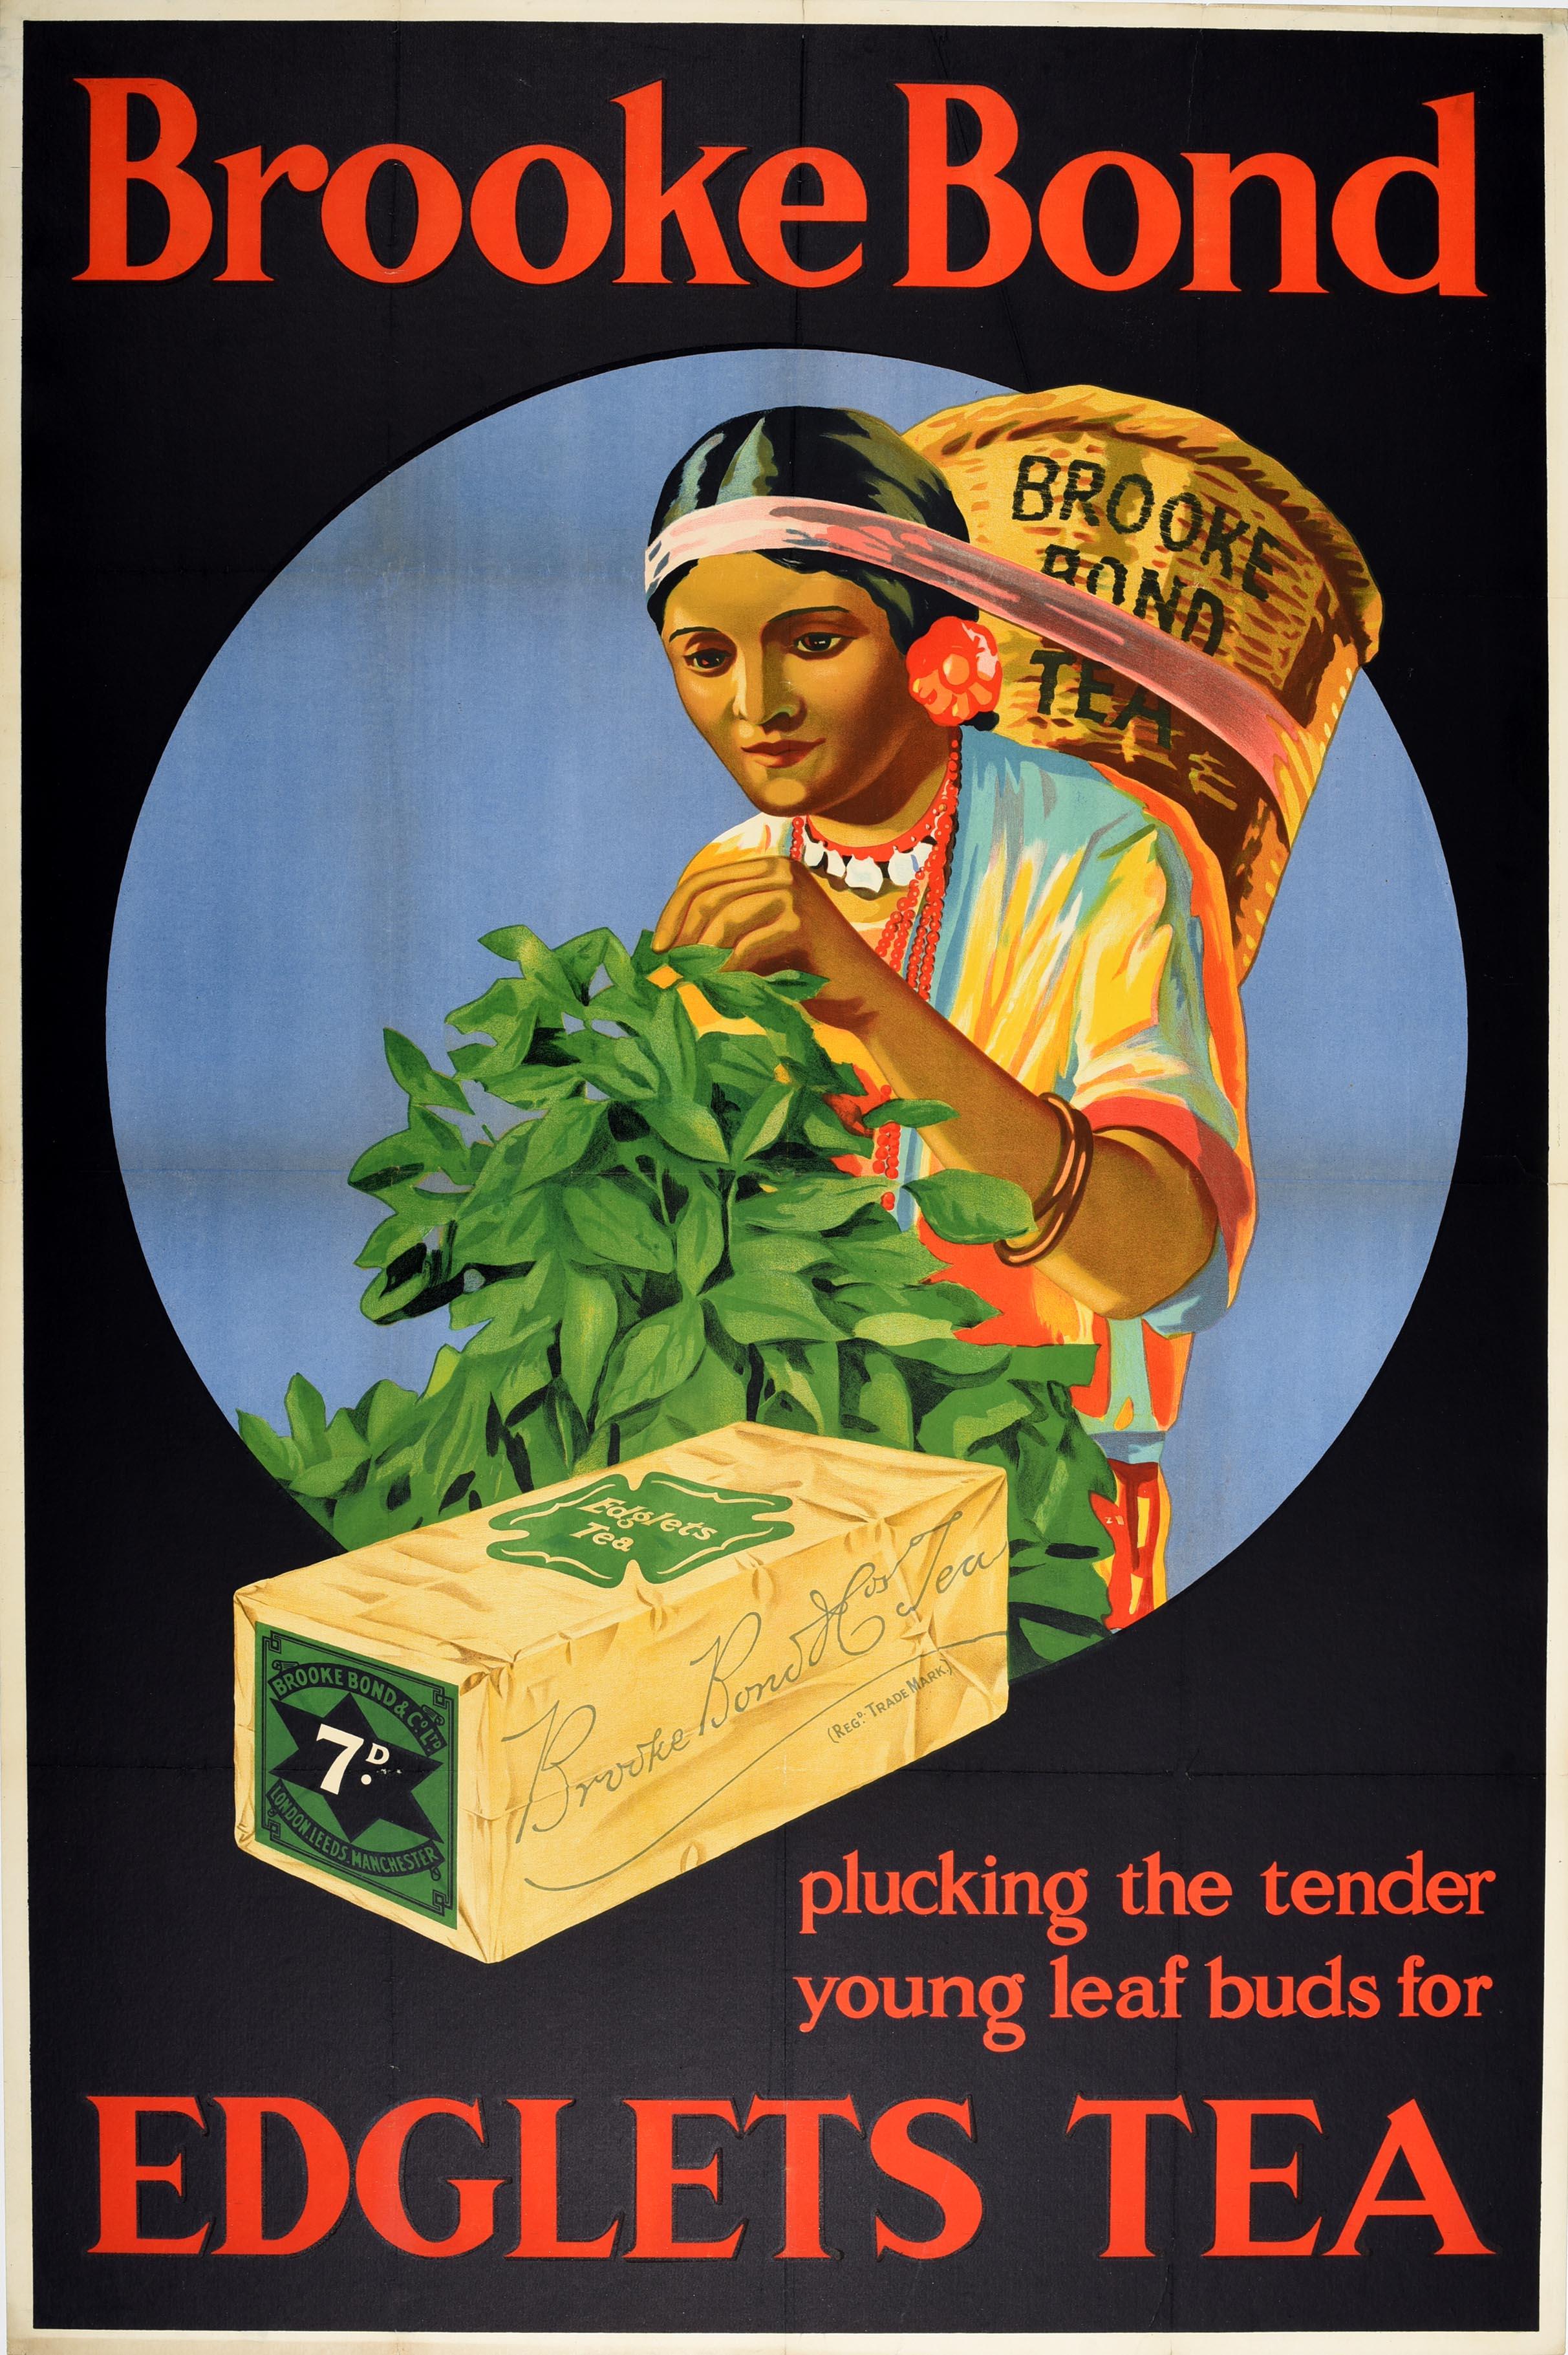 Original-Werbeplakat für Brooke Bond - Plucking the tender young leaf buds for Edglets Tea - mit einem großartigen Bild einer Teepflückerin in einem farbenfrohen Kleid mit einem Brooke Bond Tea-Korb auf dem Kopf und einer Schachtel Tee im